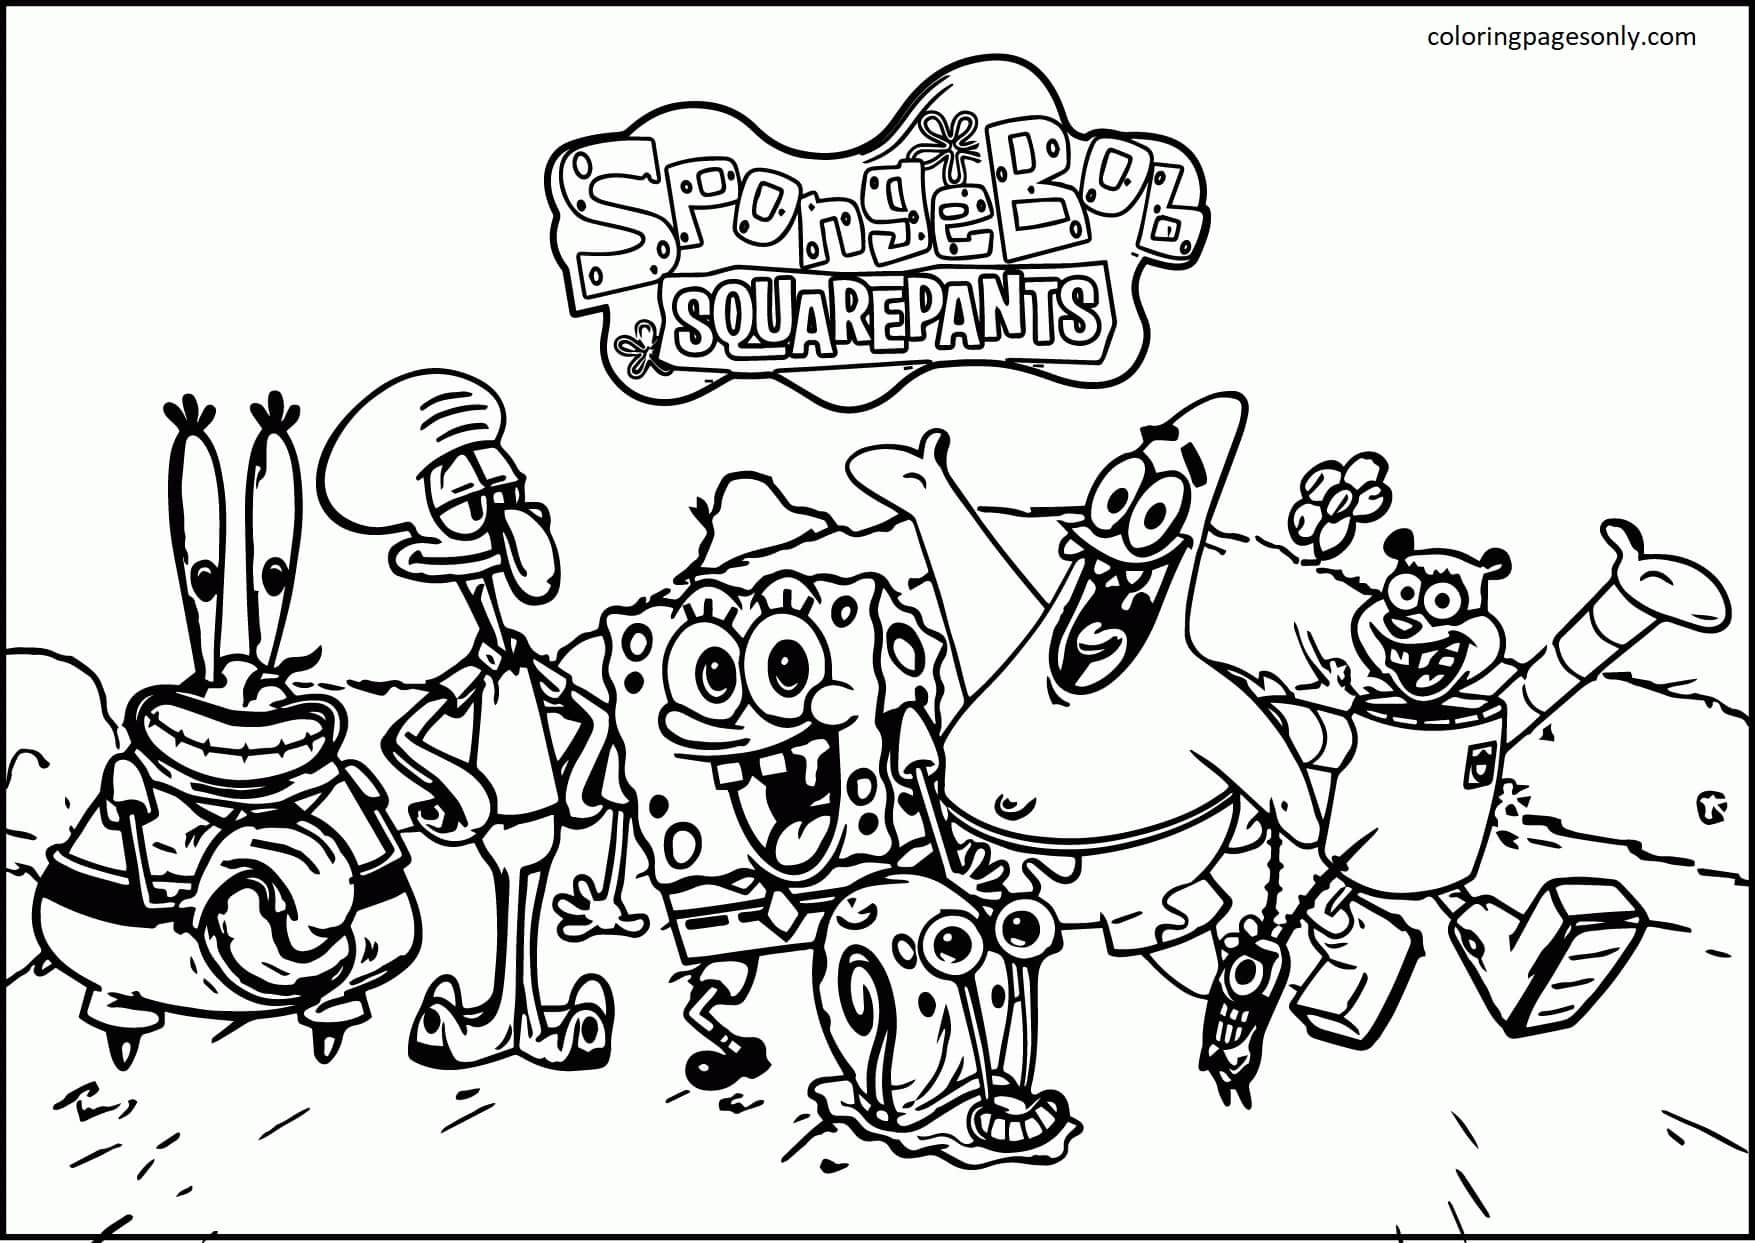 Les équipes Nickelodeon Usps Bob l'éponge Mailpants de Bob l'éponge